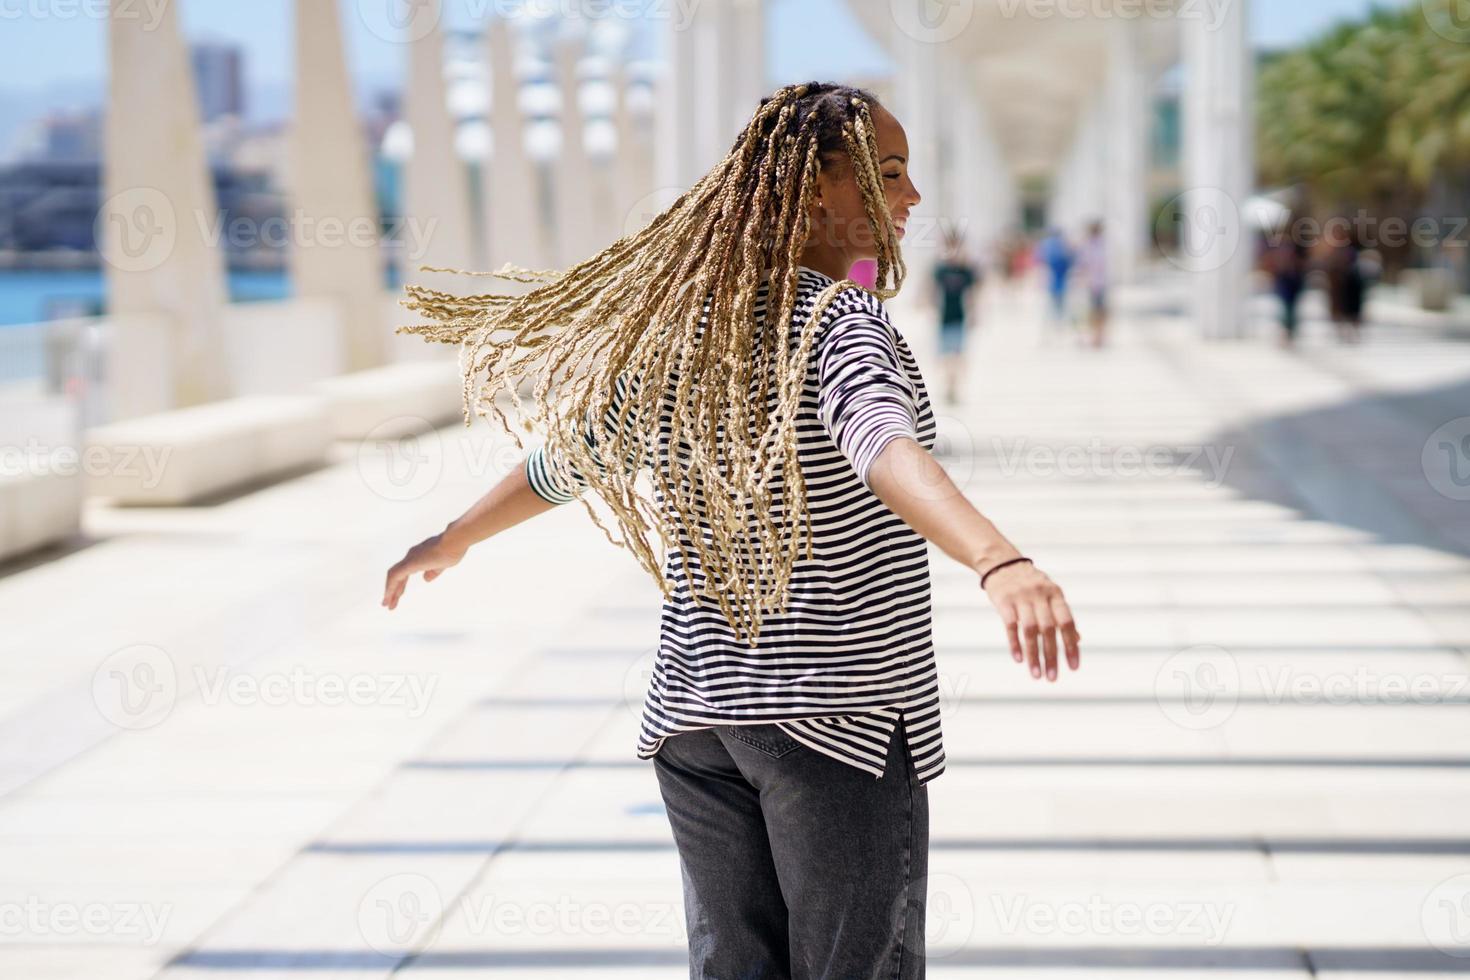 jovem negra movendo suas tranças coloridas ao vento. penteado africano típico. foto